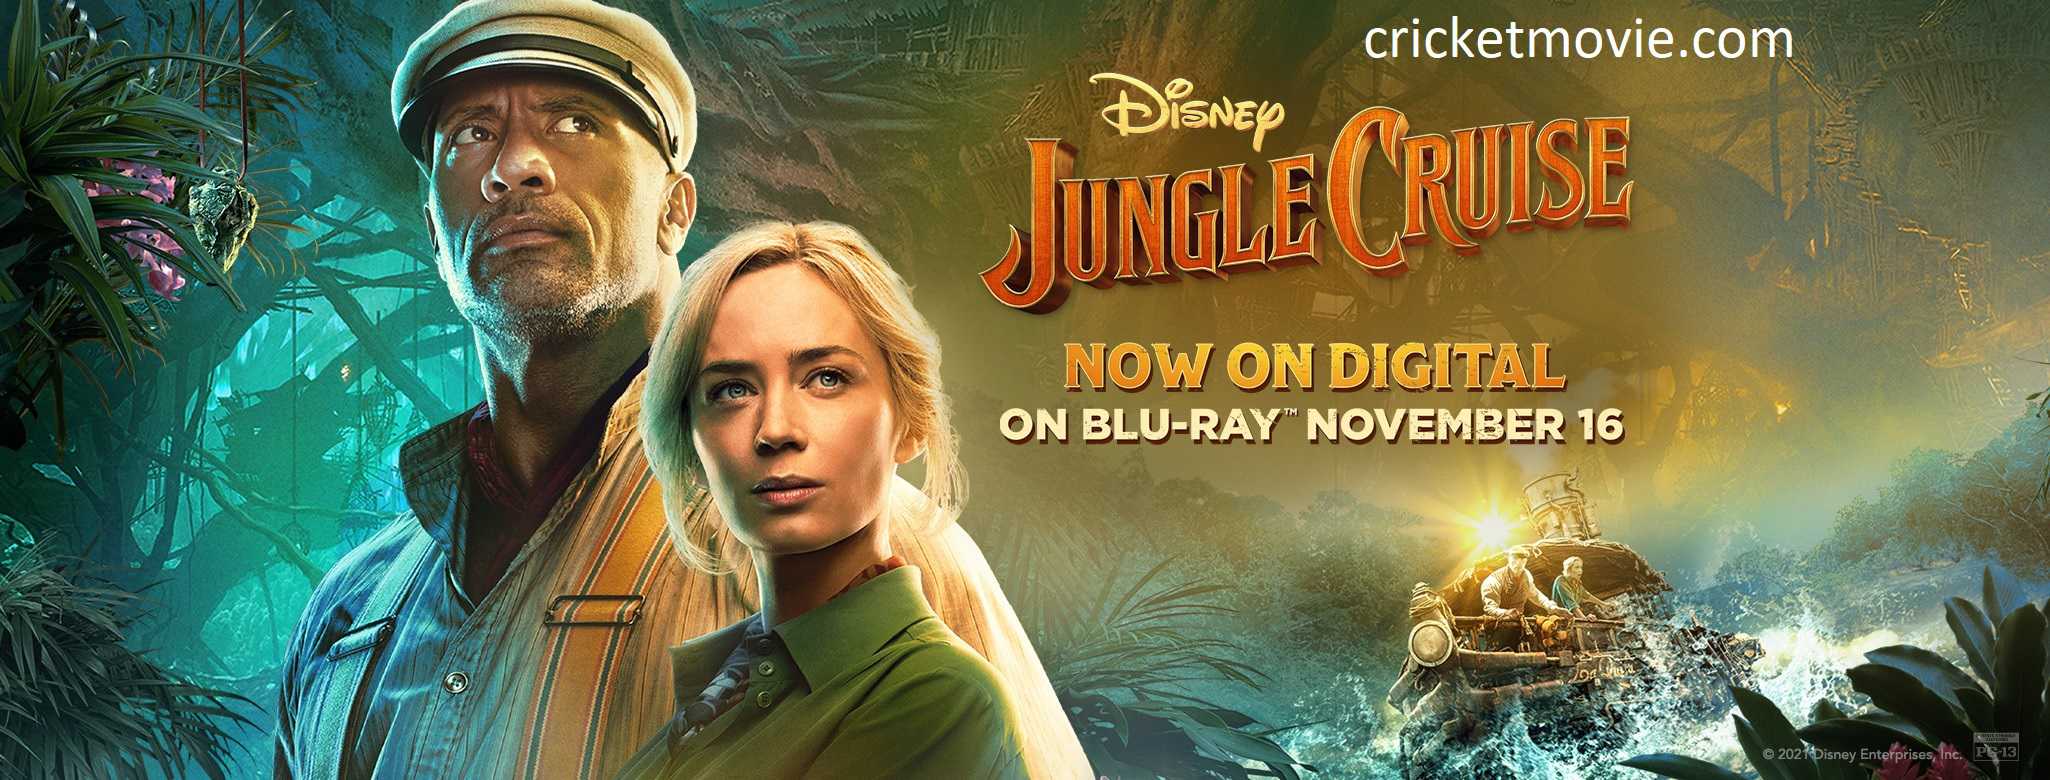 Jungle Cruise Review-cricketmovie.com